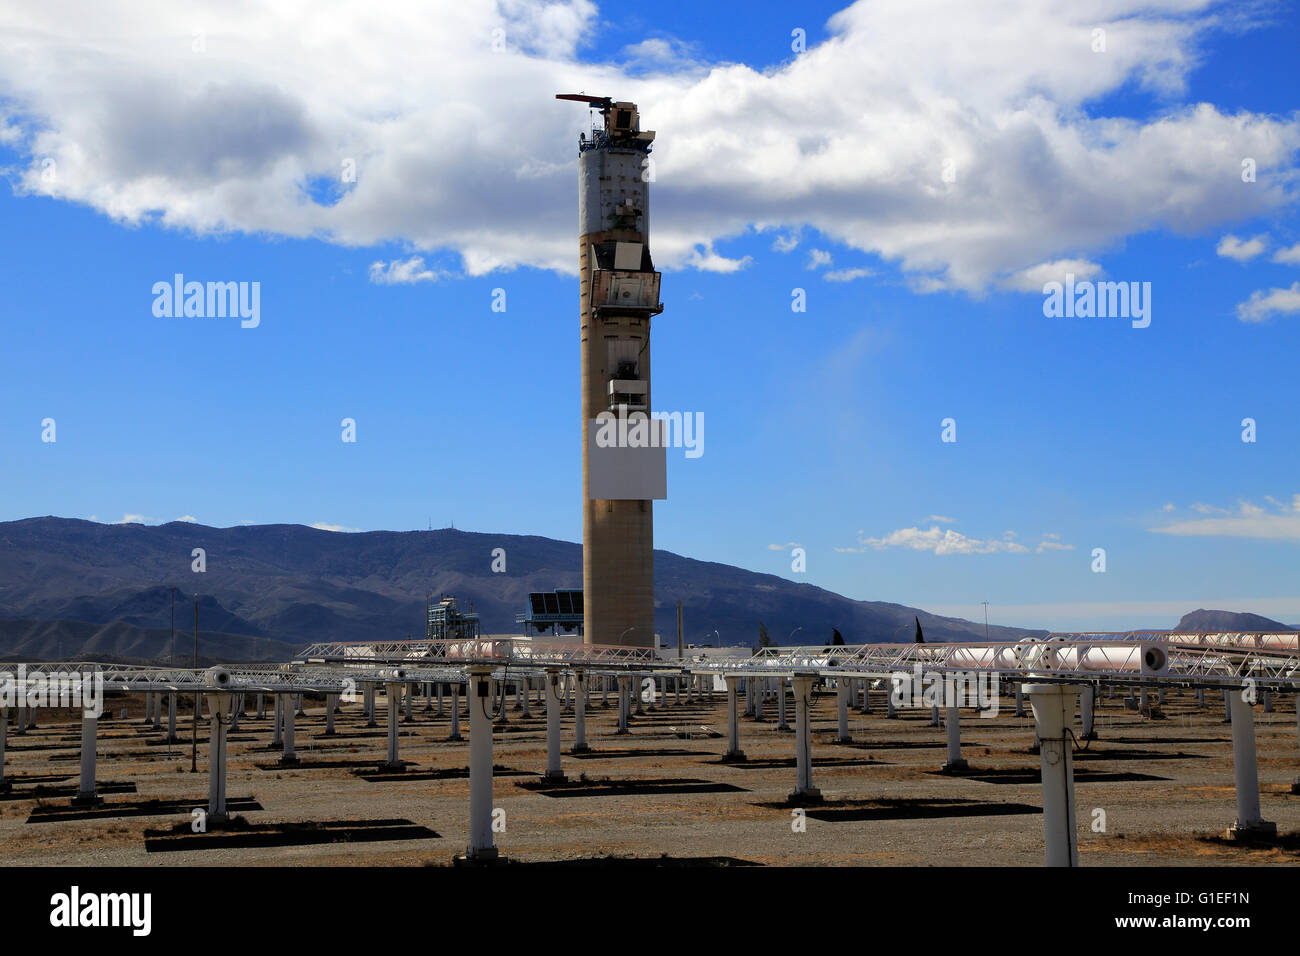 Los heliostatos y receptor central de torre CESA-1 en el centro de investigación científica de la energía solar, Tabernas, Almería, España Foto de stock